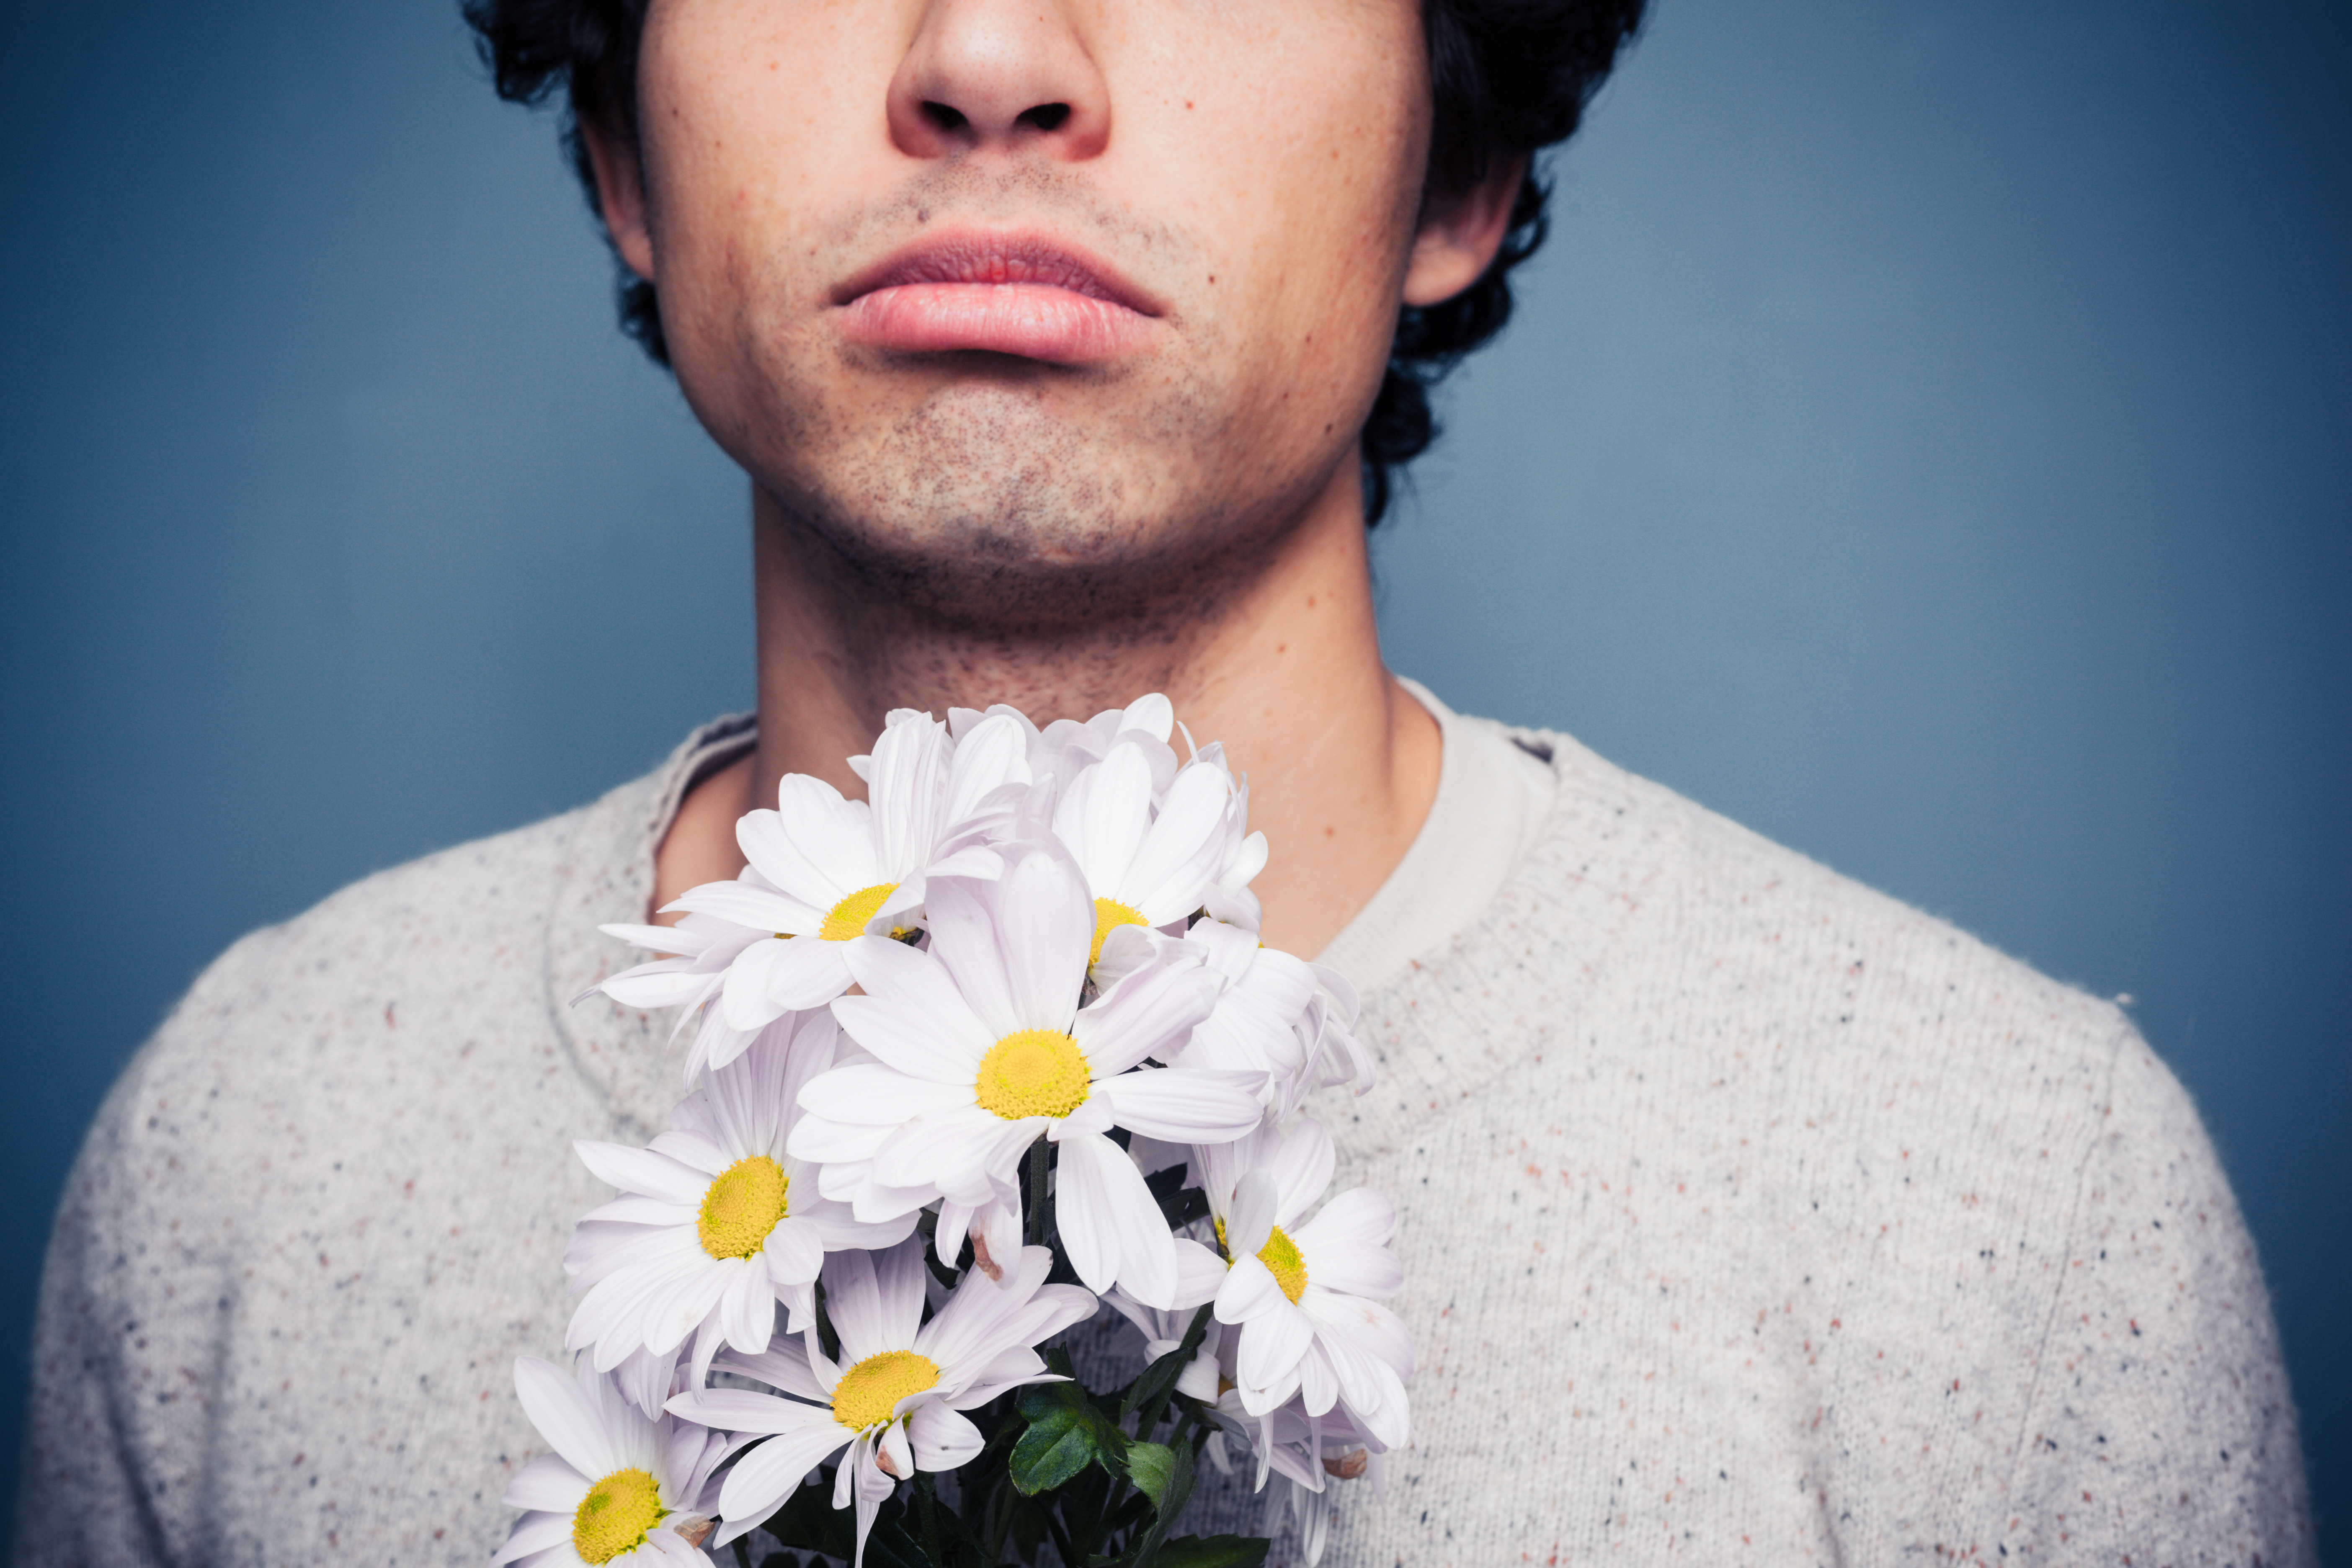 Mann mit Blumen | Quelle: Shutterstock